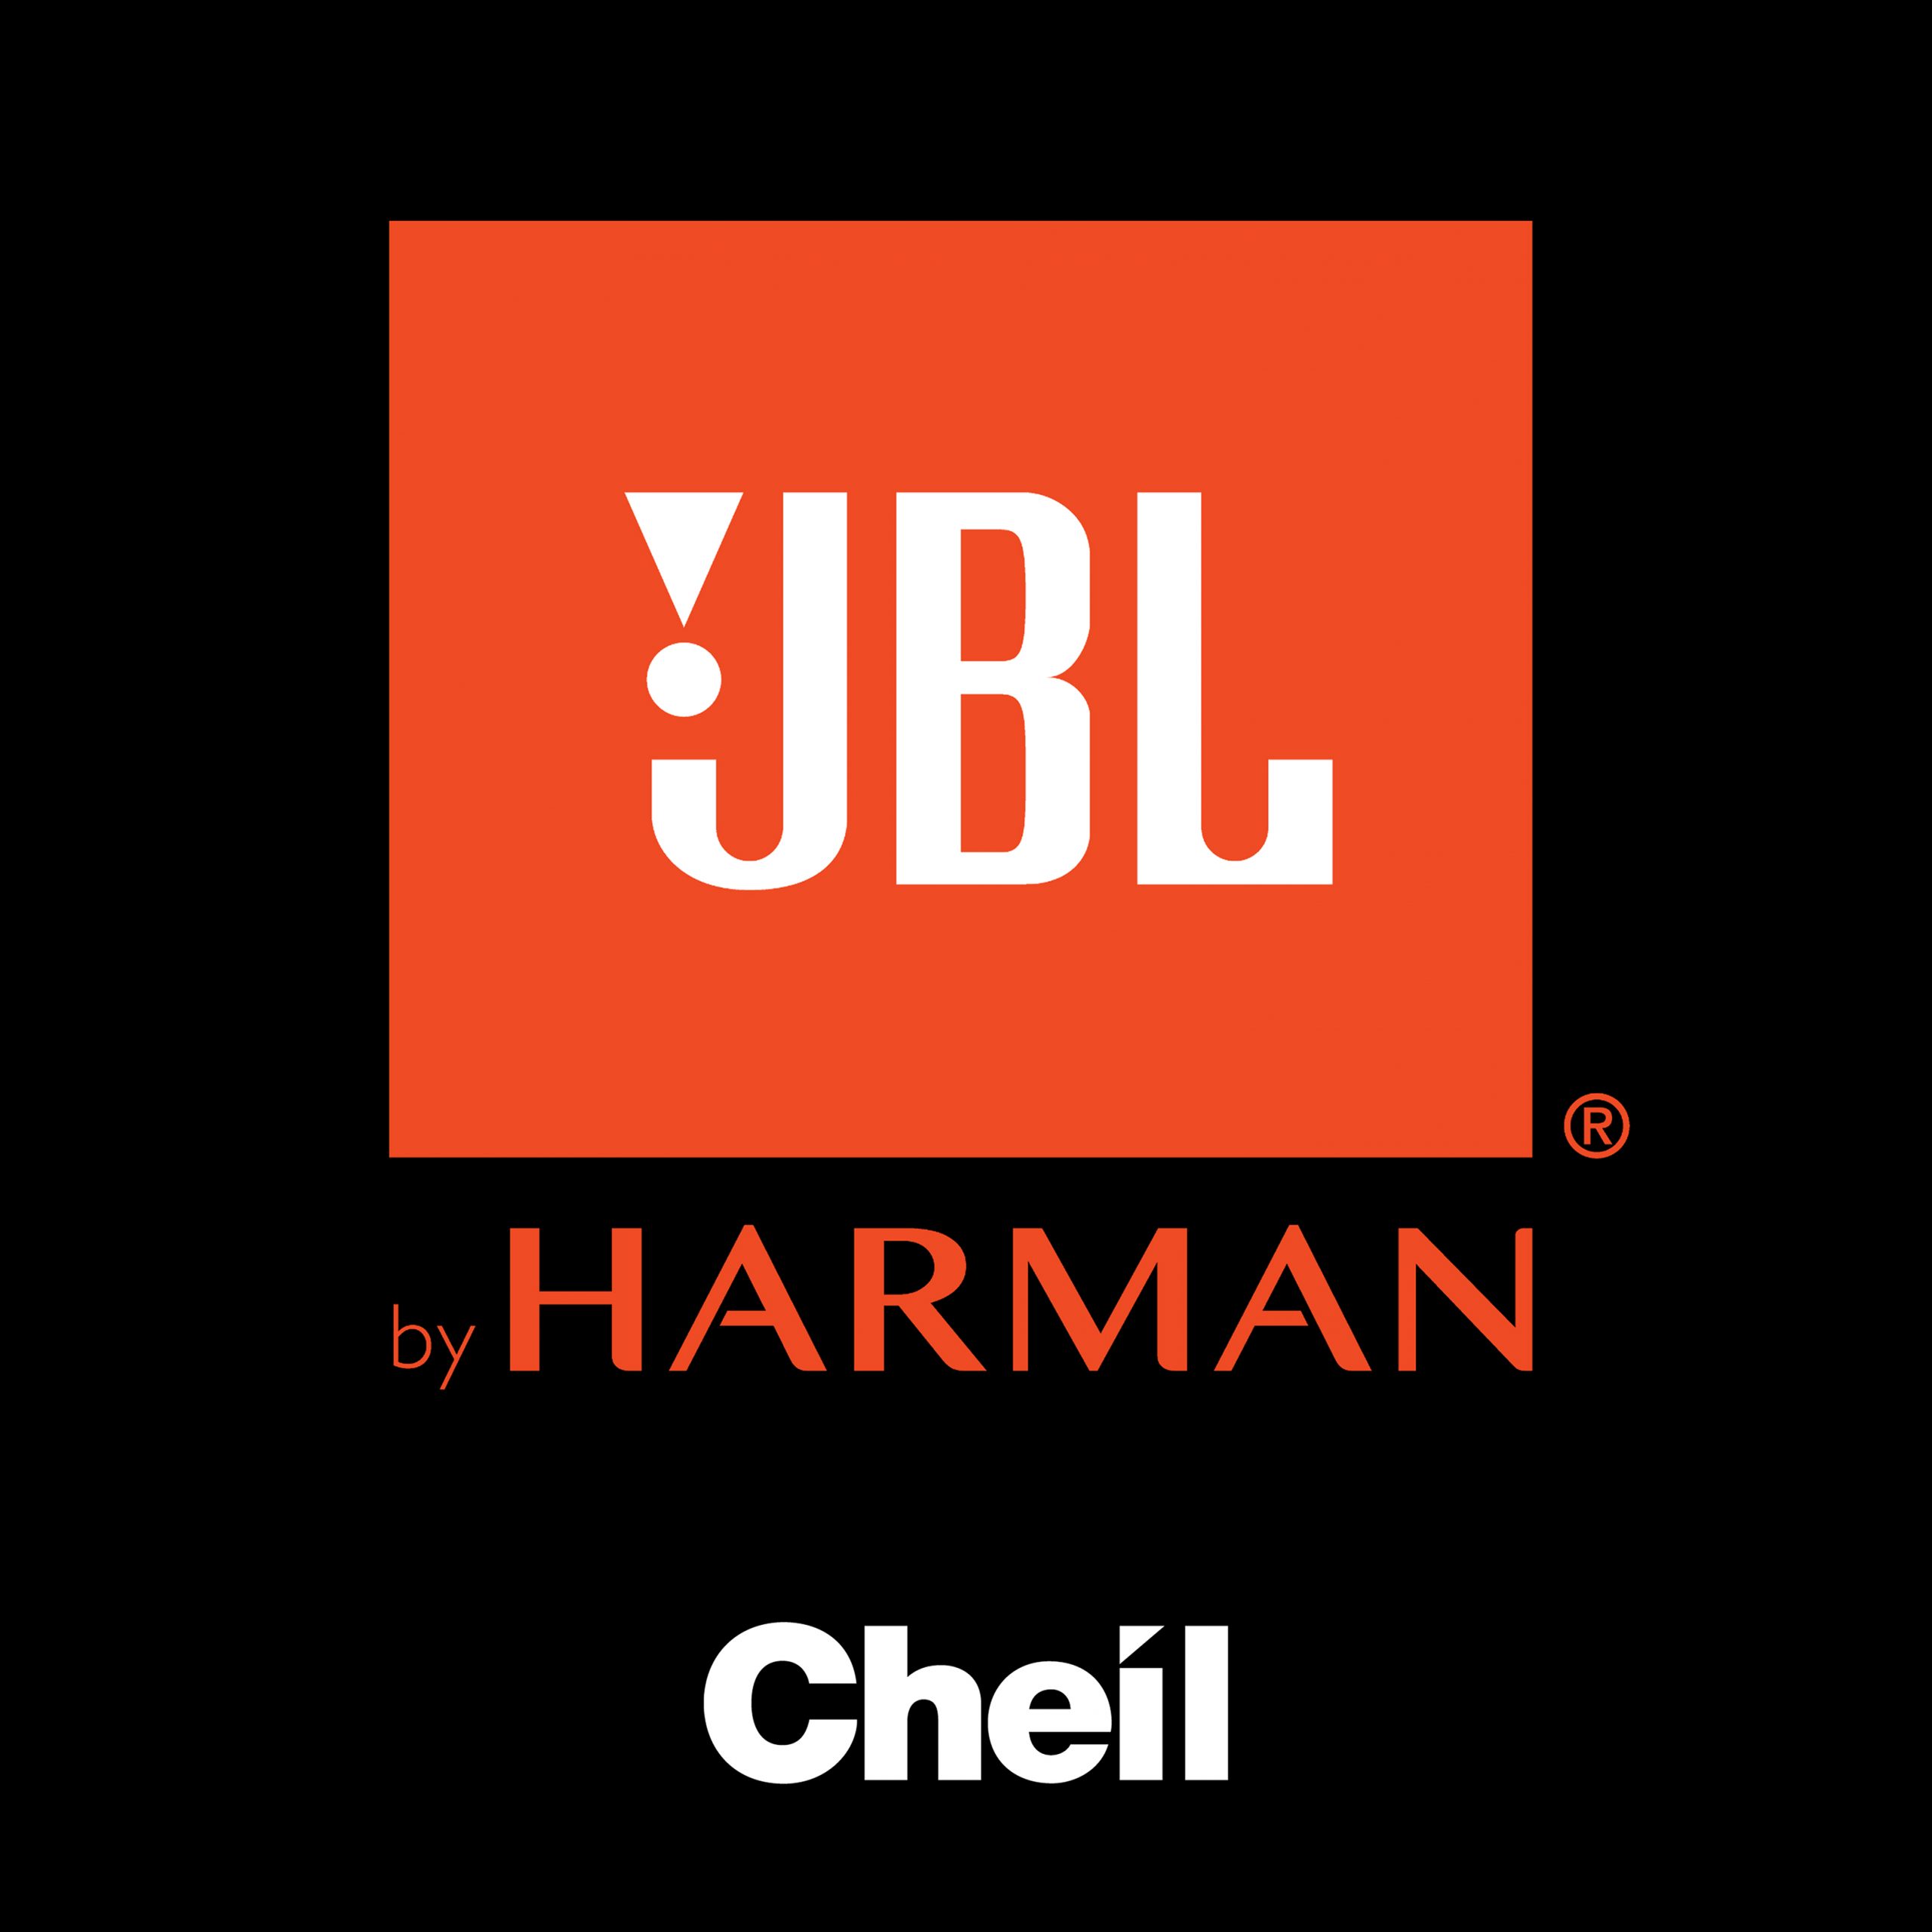 JBL inicia parceria com Cheil Brasil para projetos de varejo